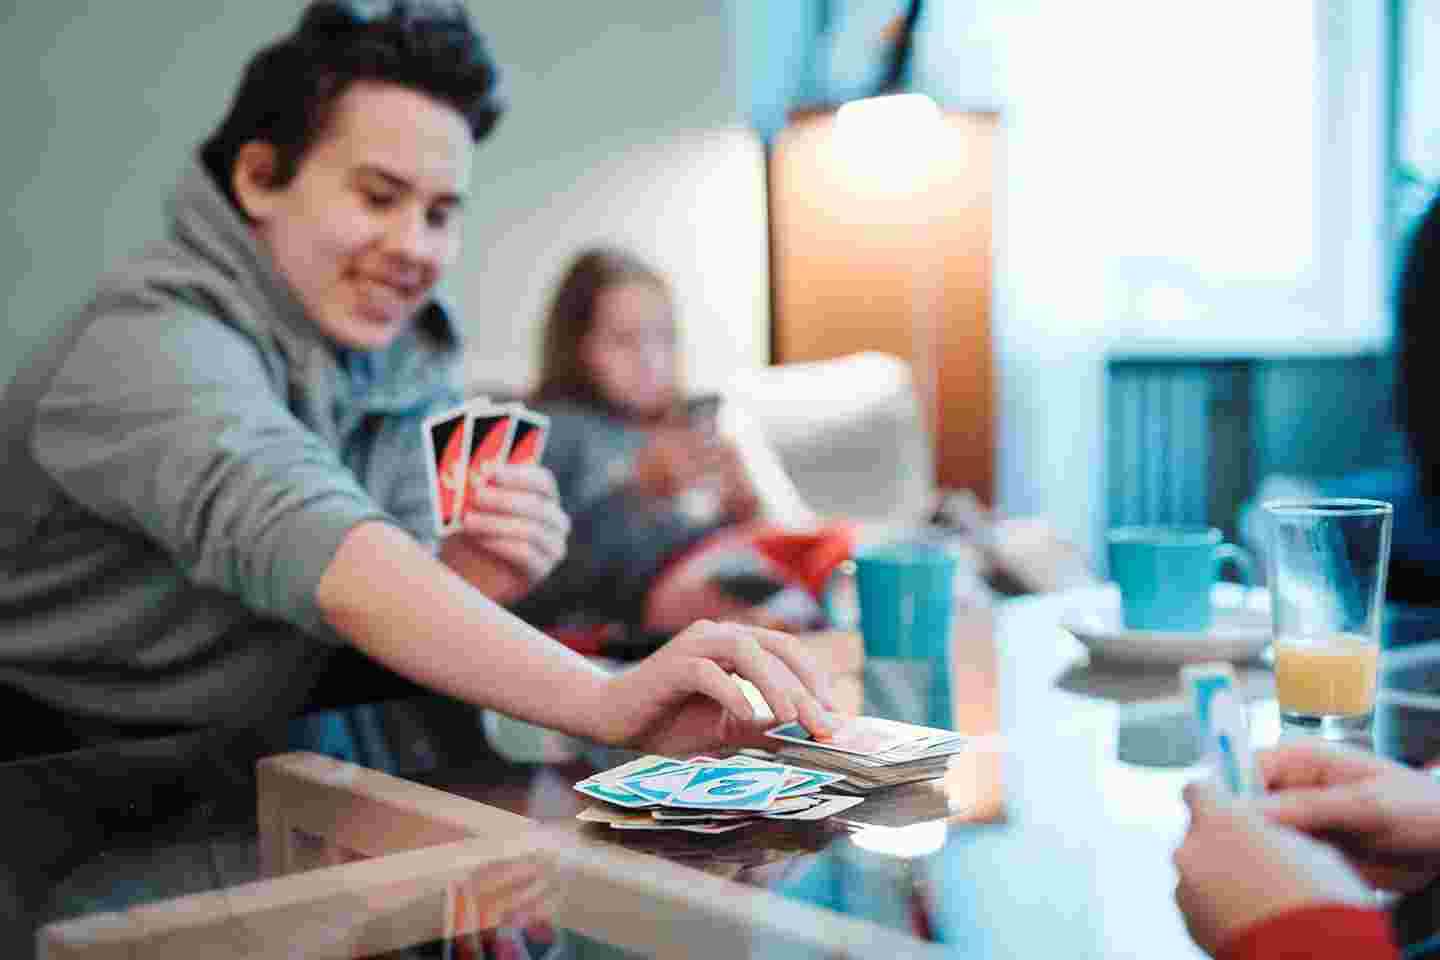 Hymyilevä nuori henkilö pelaa UNO-korttipeliä Nuorten turvatalossa muiden nuorten kanssa.